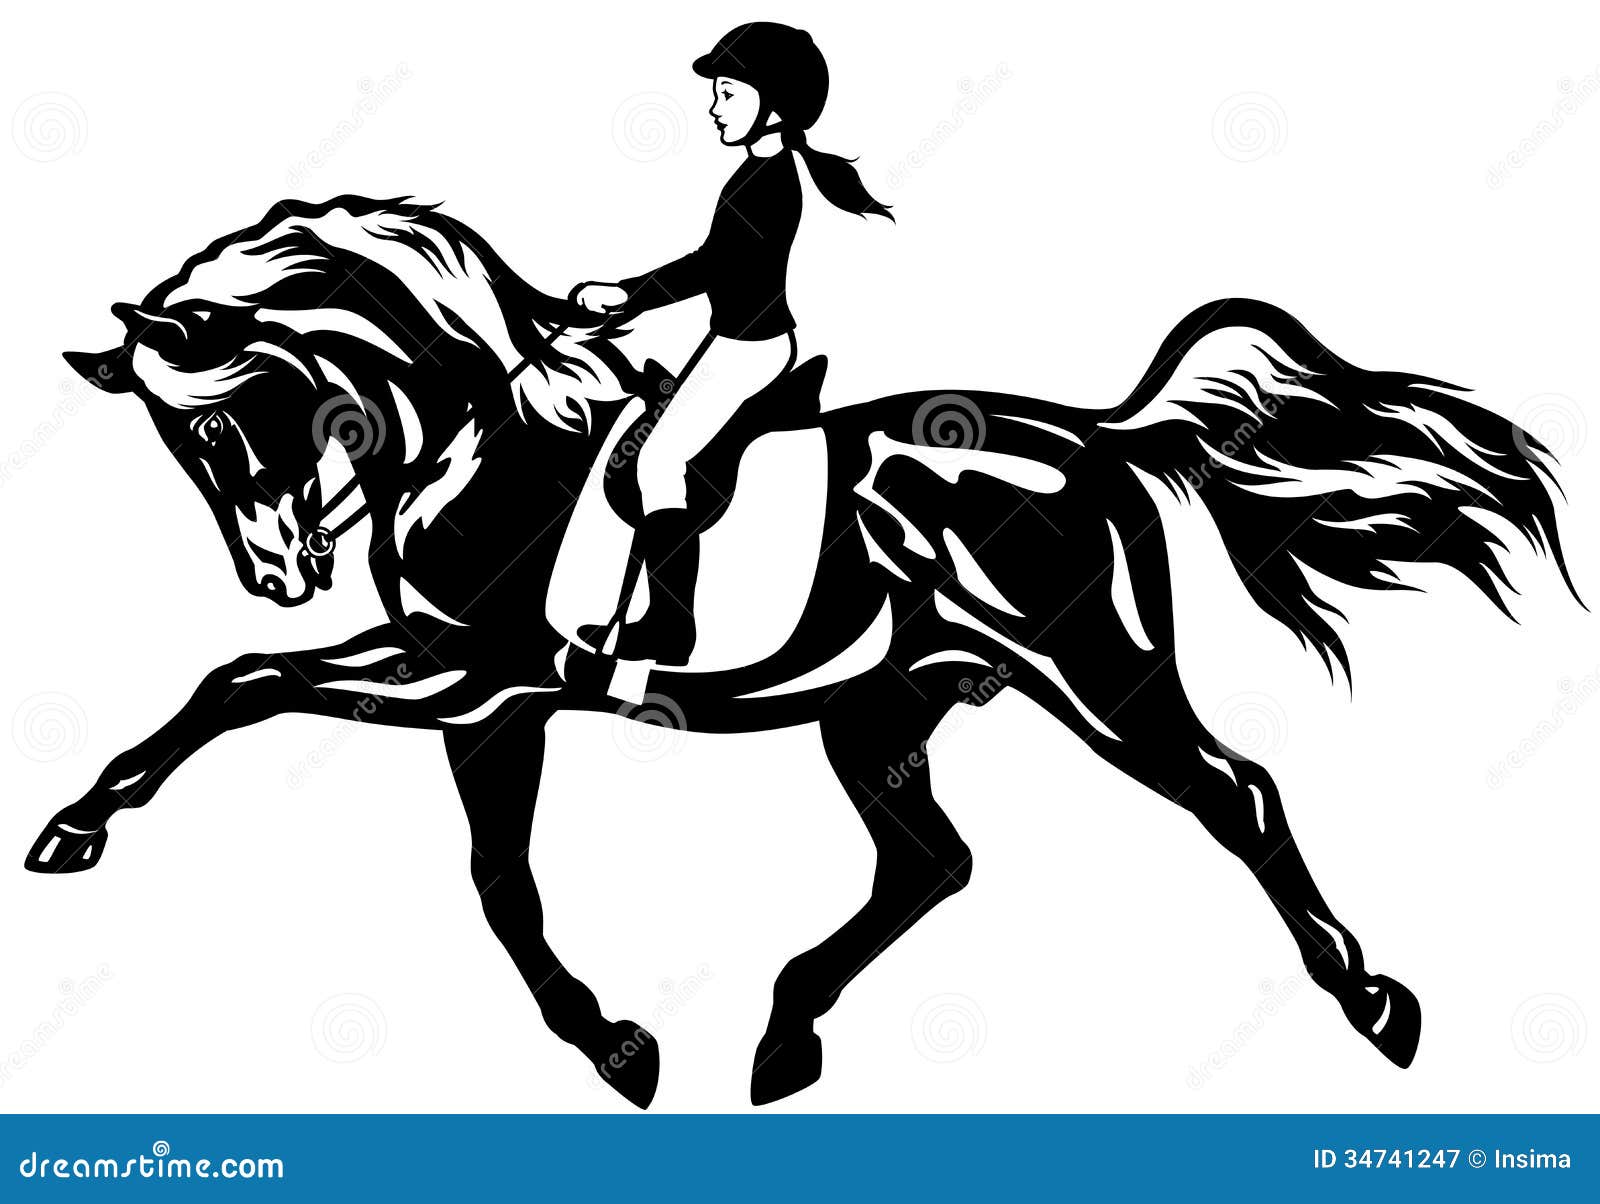 clip art girl riding horse - photo #41